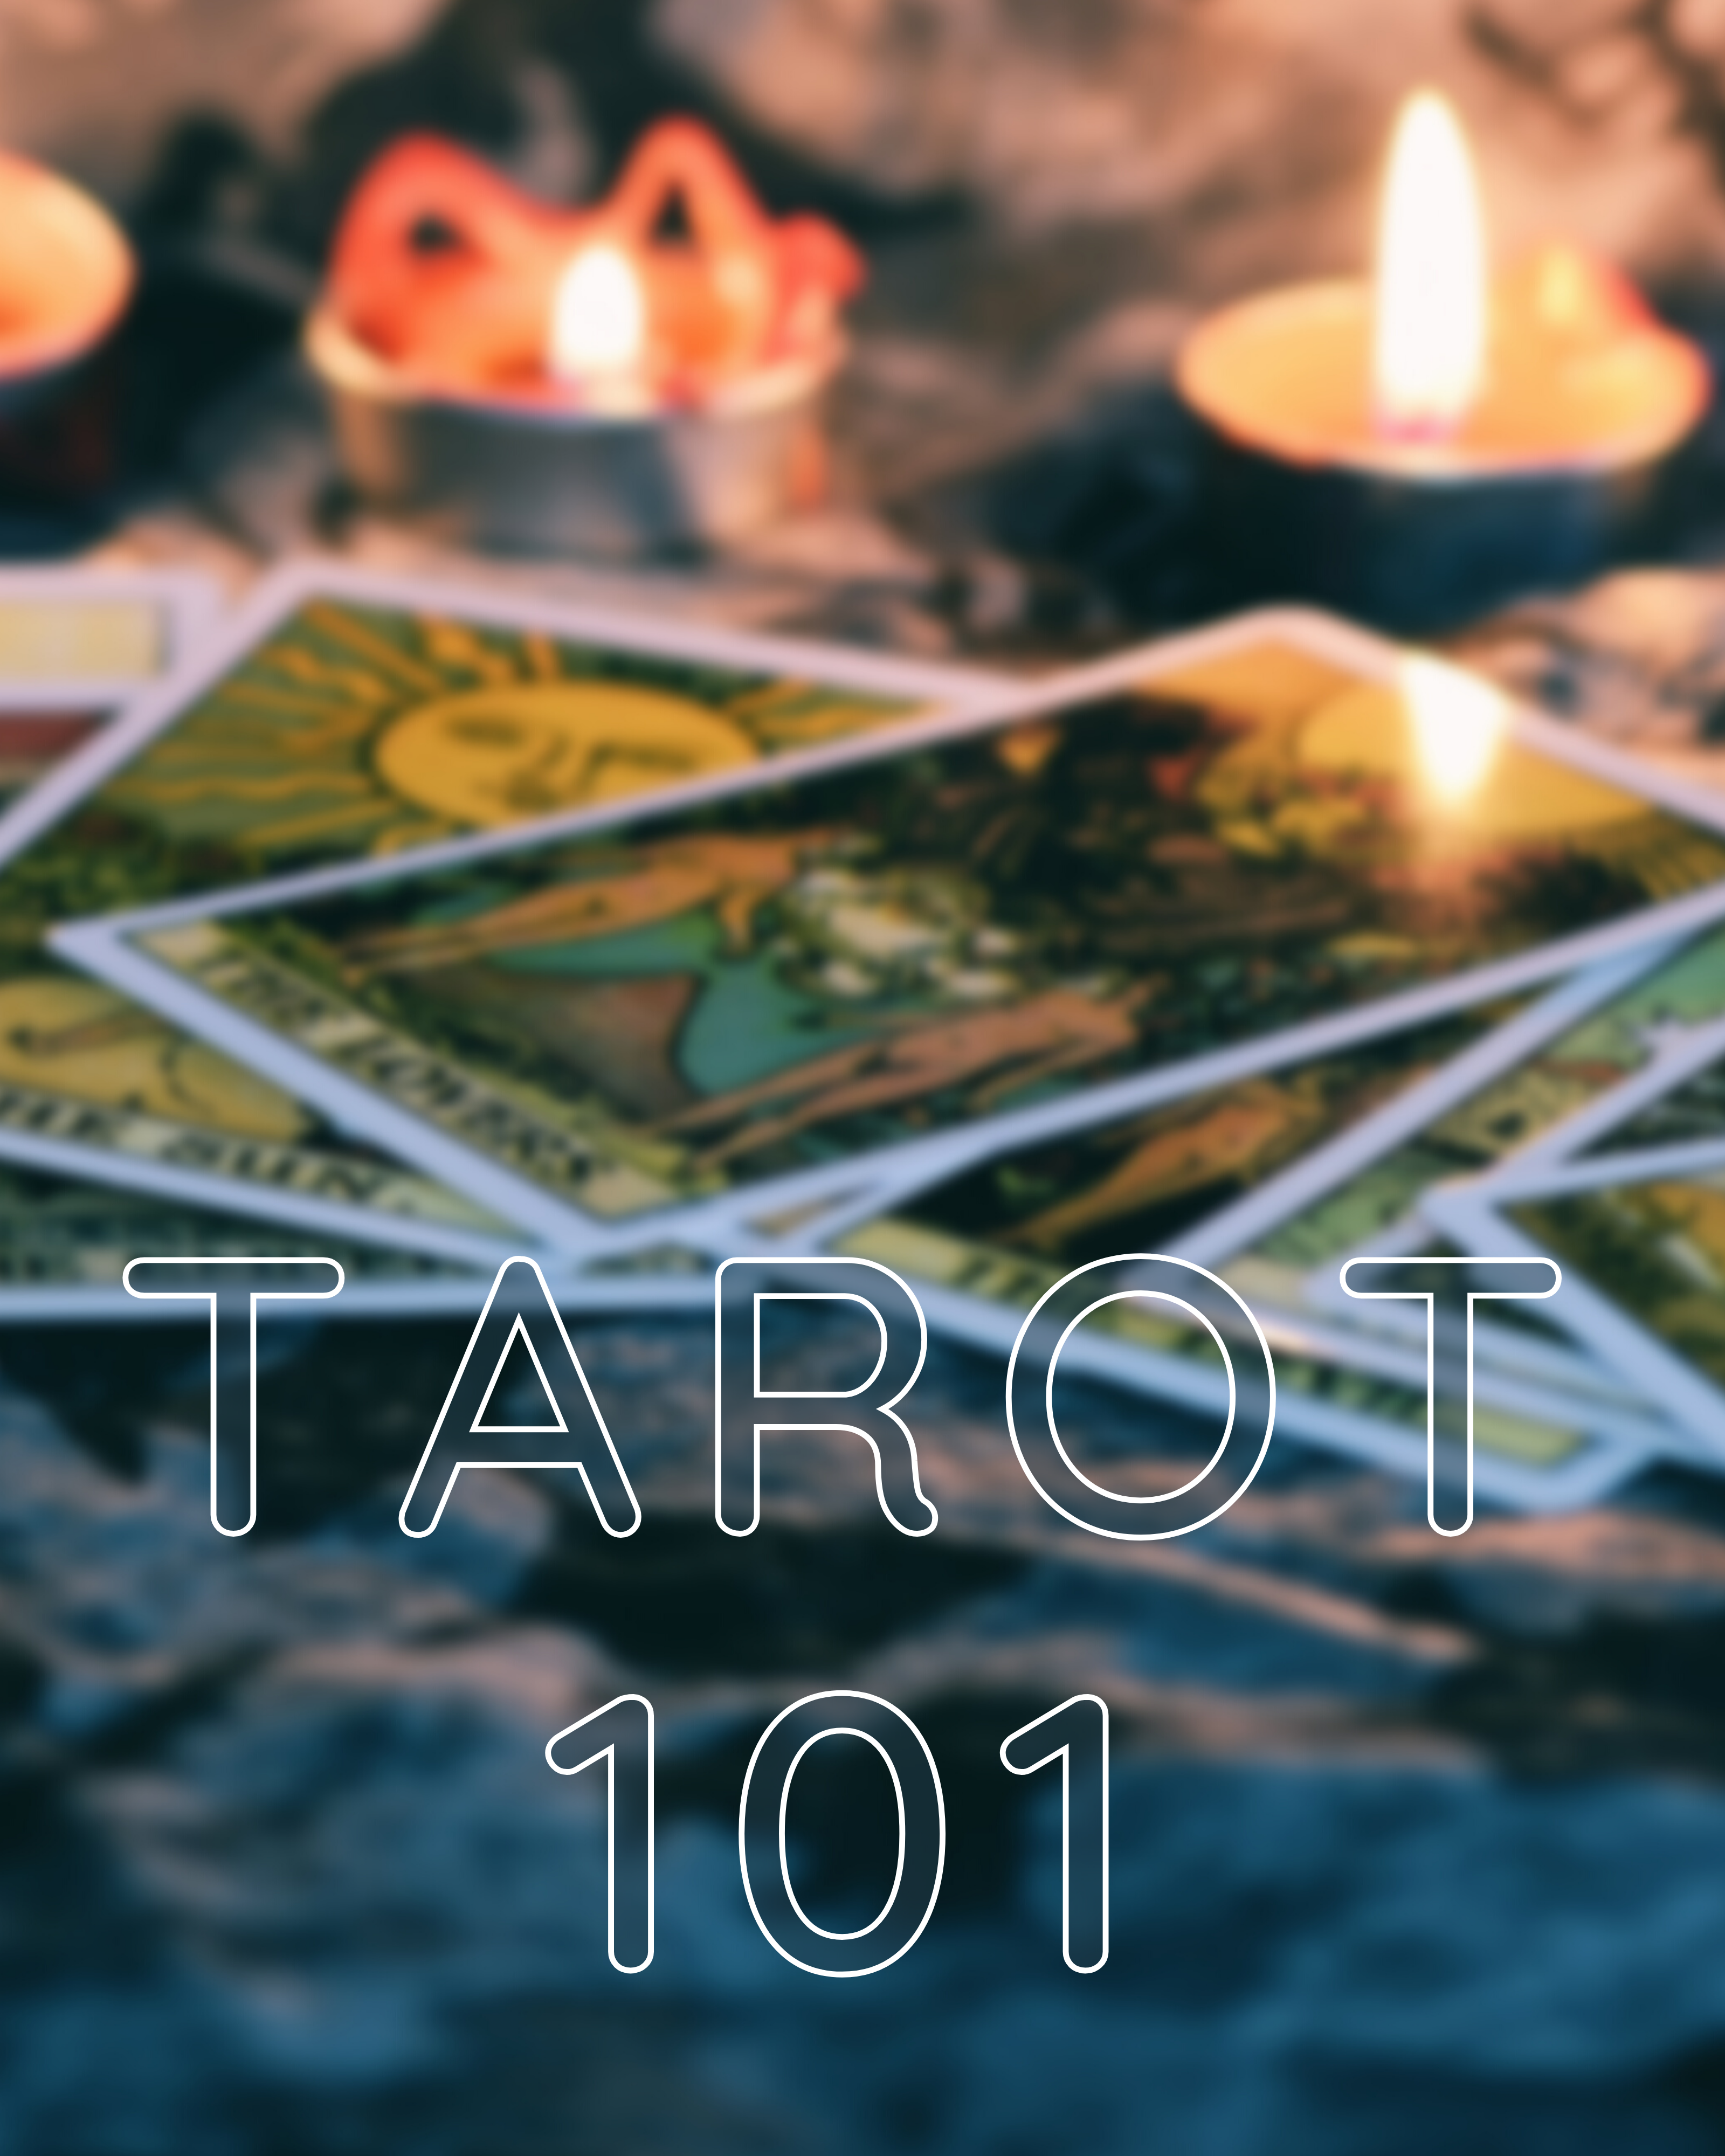 Tarot Cards with Candles words Tarot 101